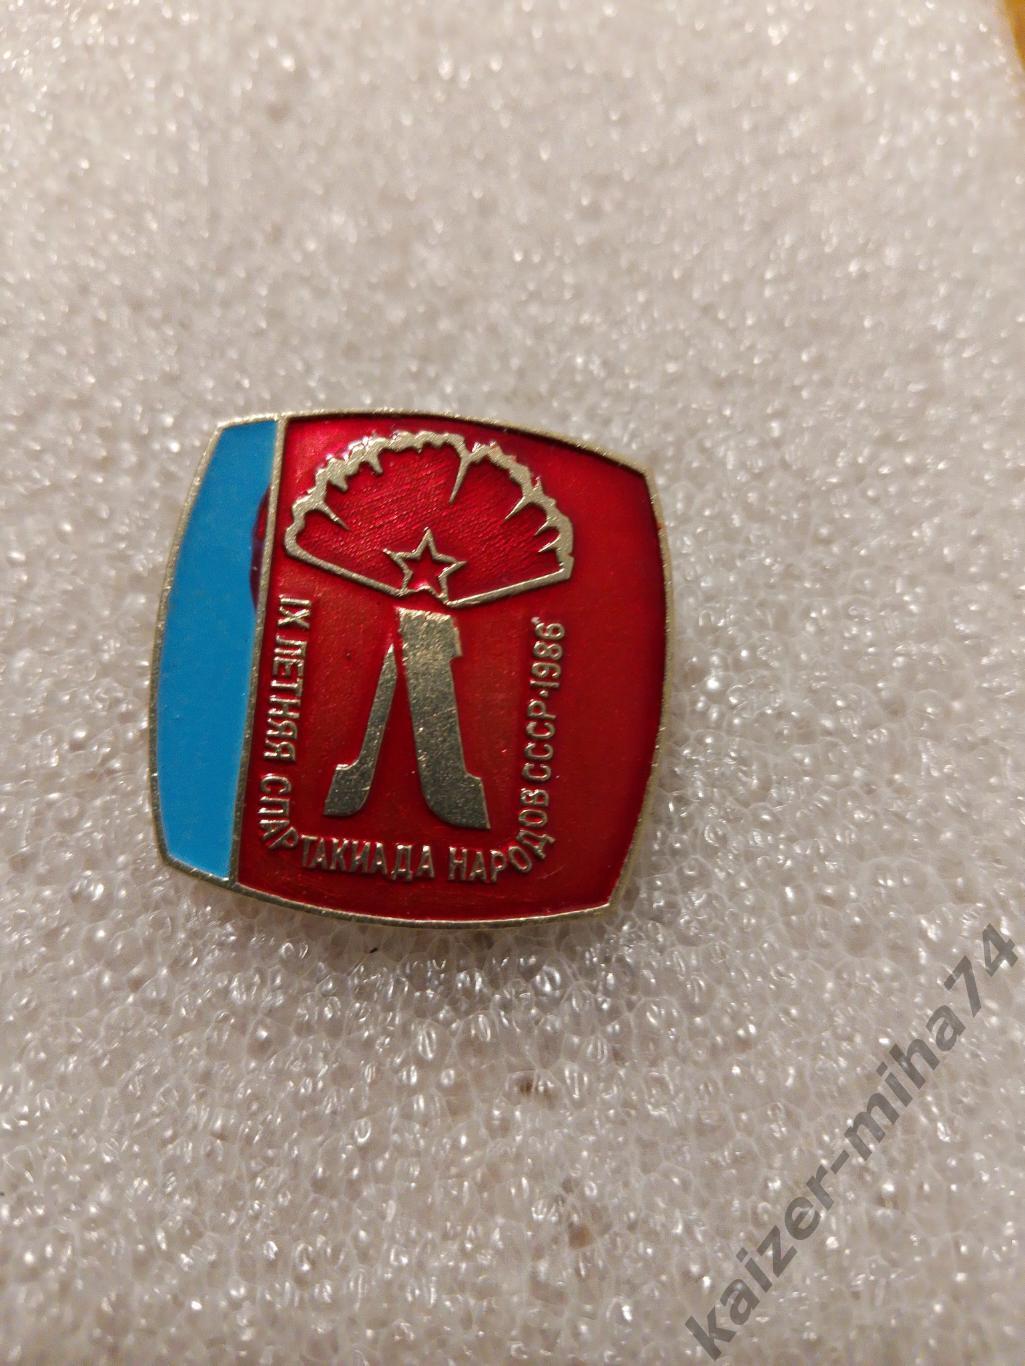 9-я.летняя спартакиада народов СССР 1986г.